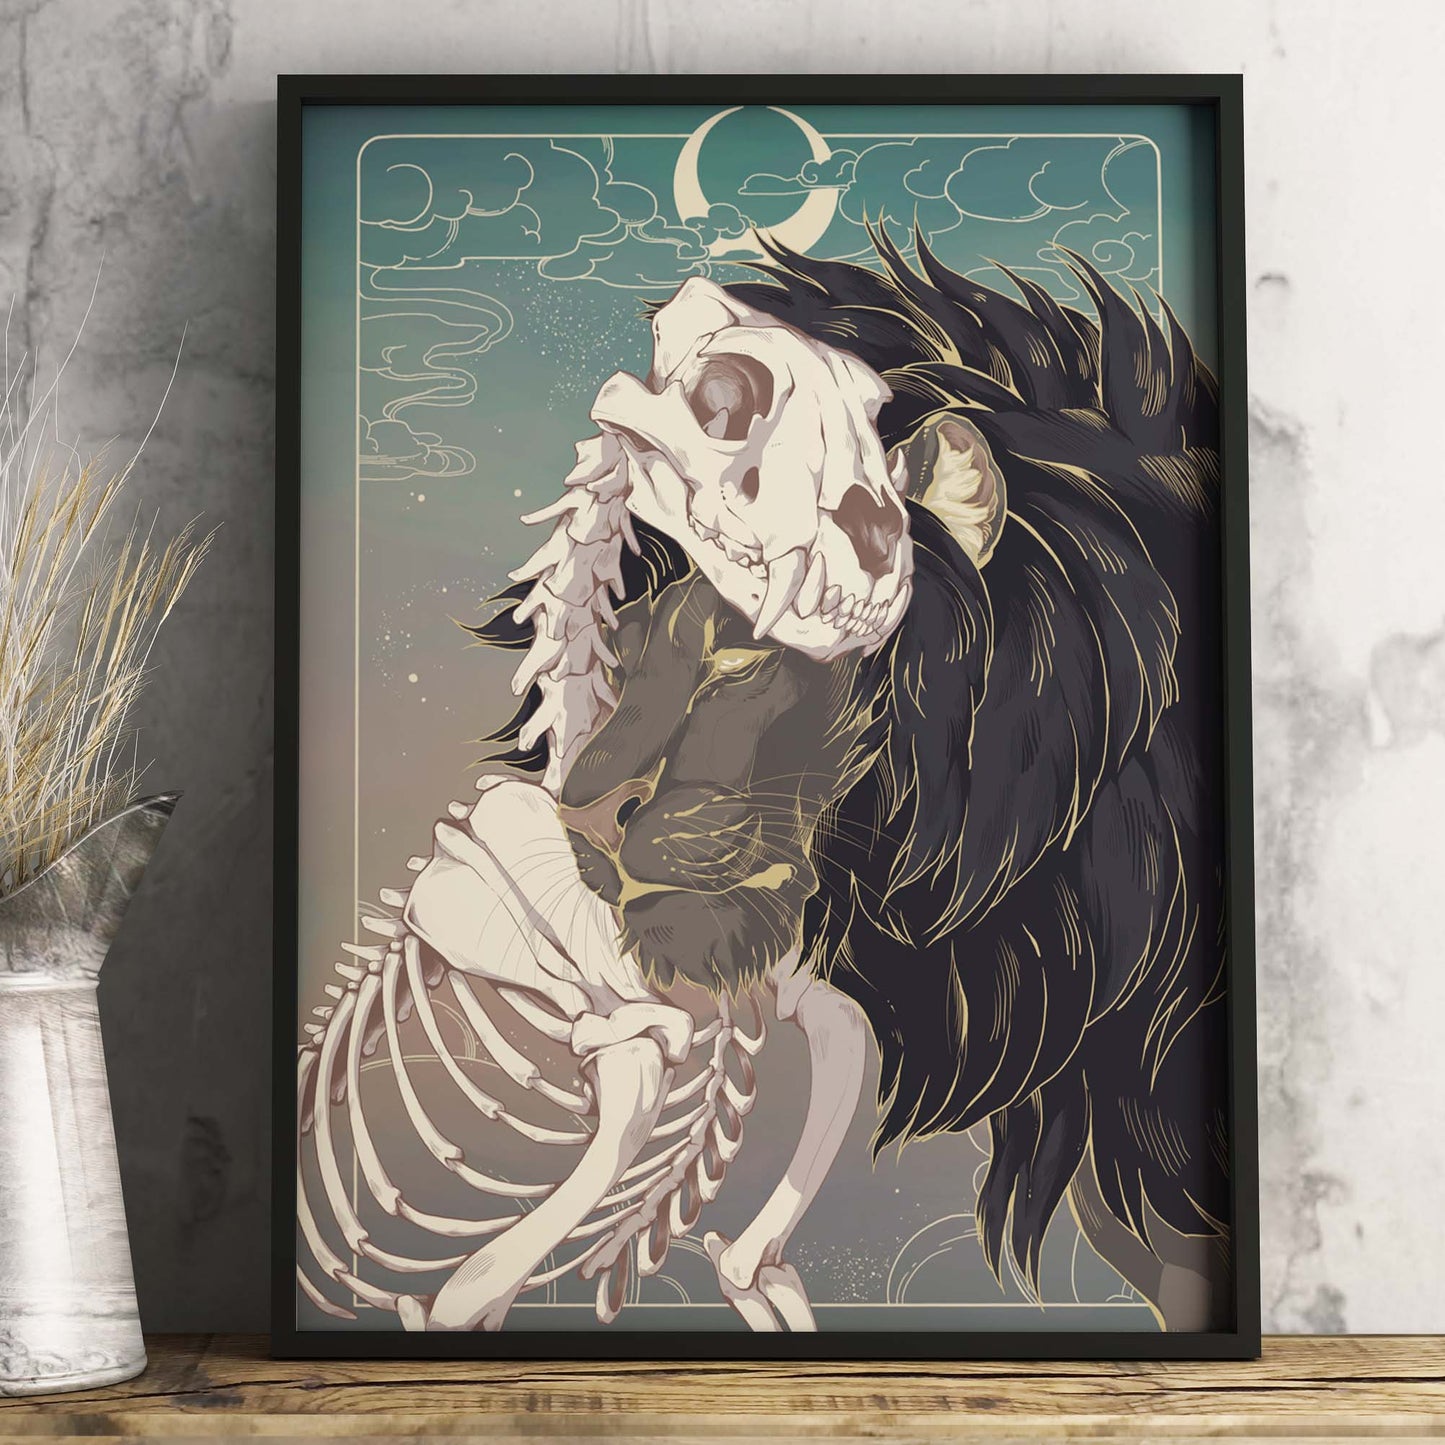 Art print "Grief Lion" by Gren Art